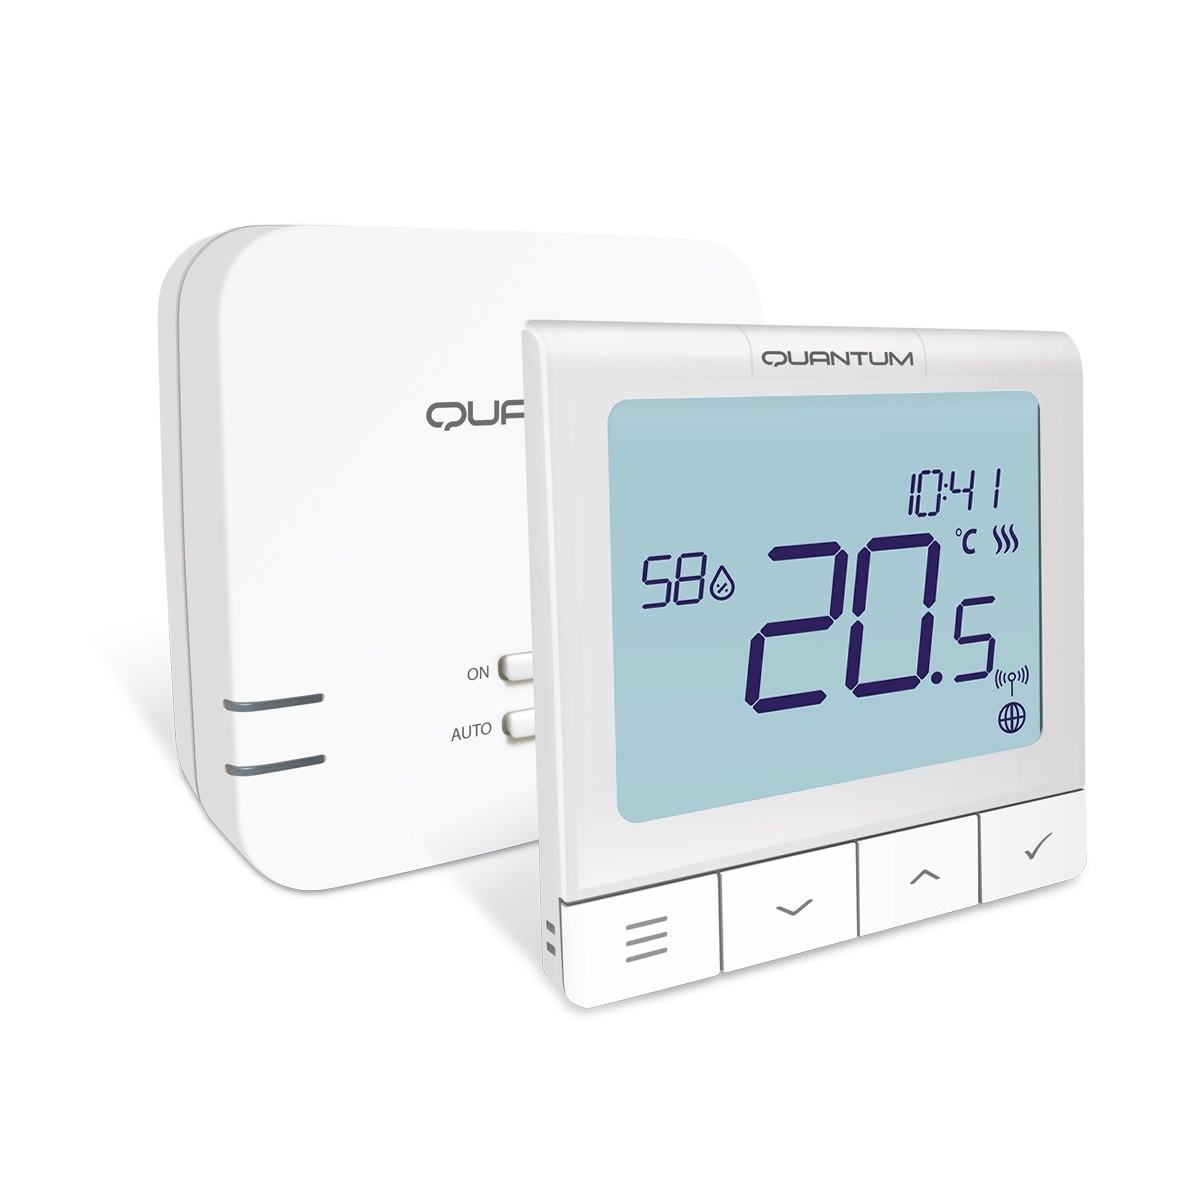 Qué es un termostato inalámbrico?